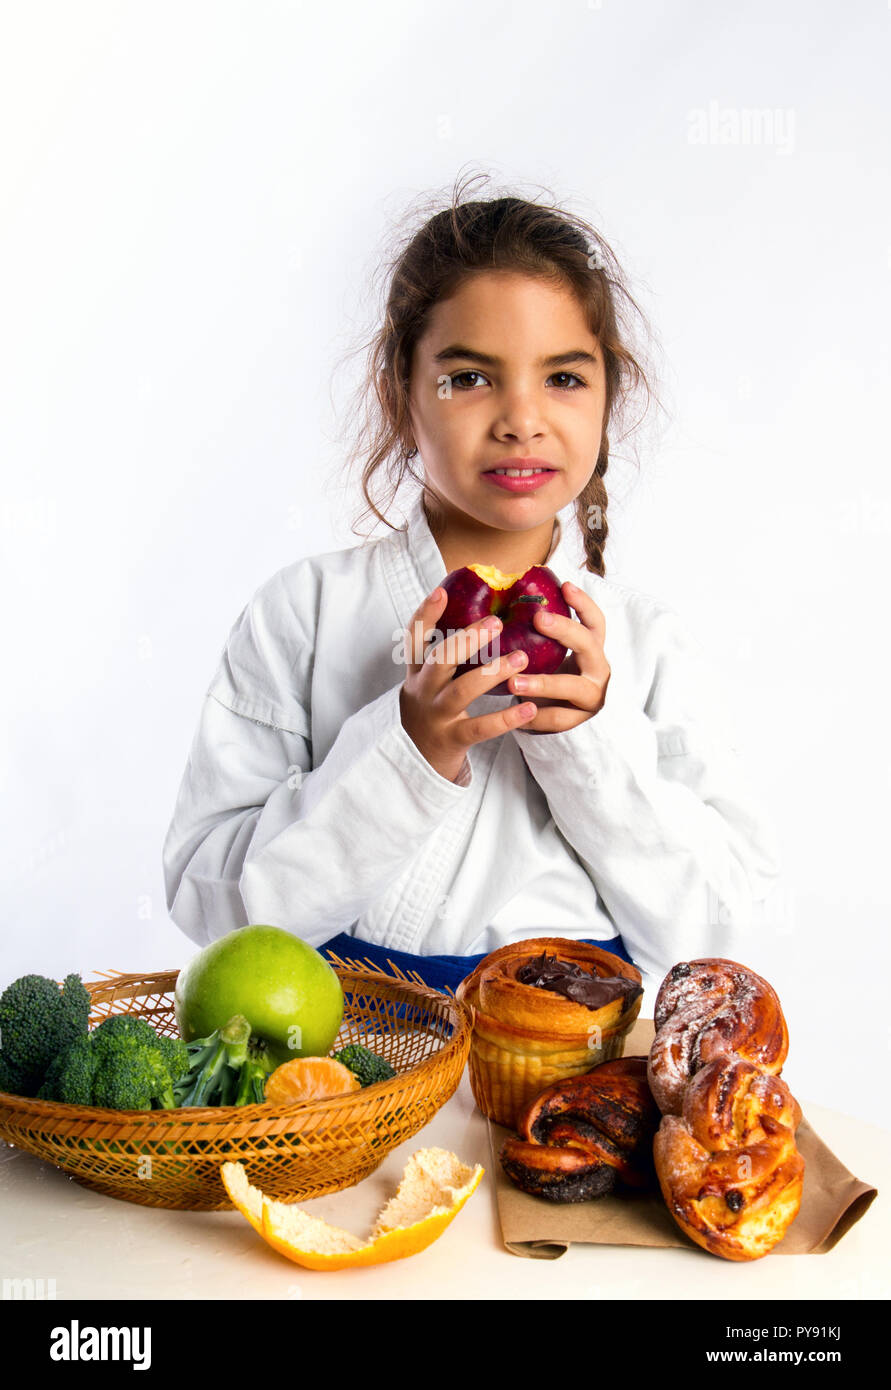 Ein kleines Mädchen in Karate uniform und eine Blue Belt wählte Äpfel anstelle von Brötchen essen Stockfoto